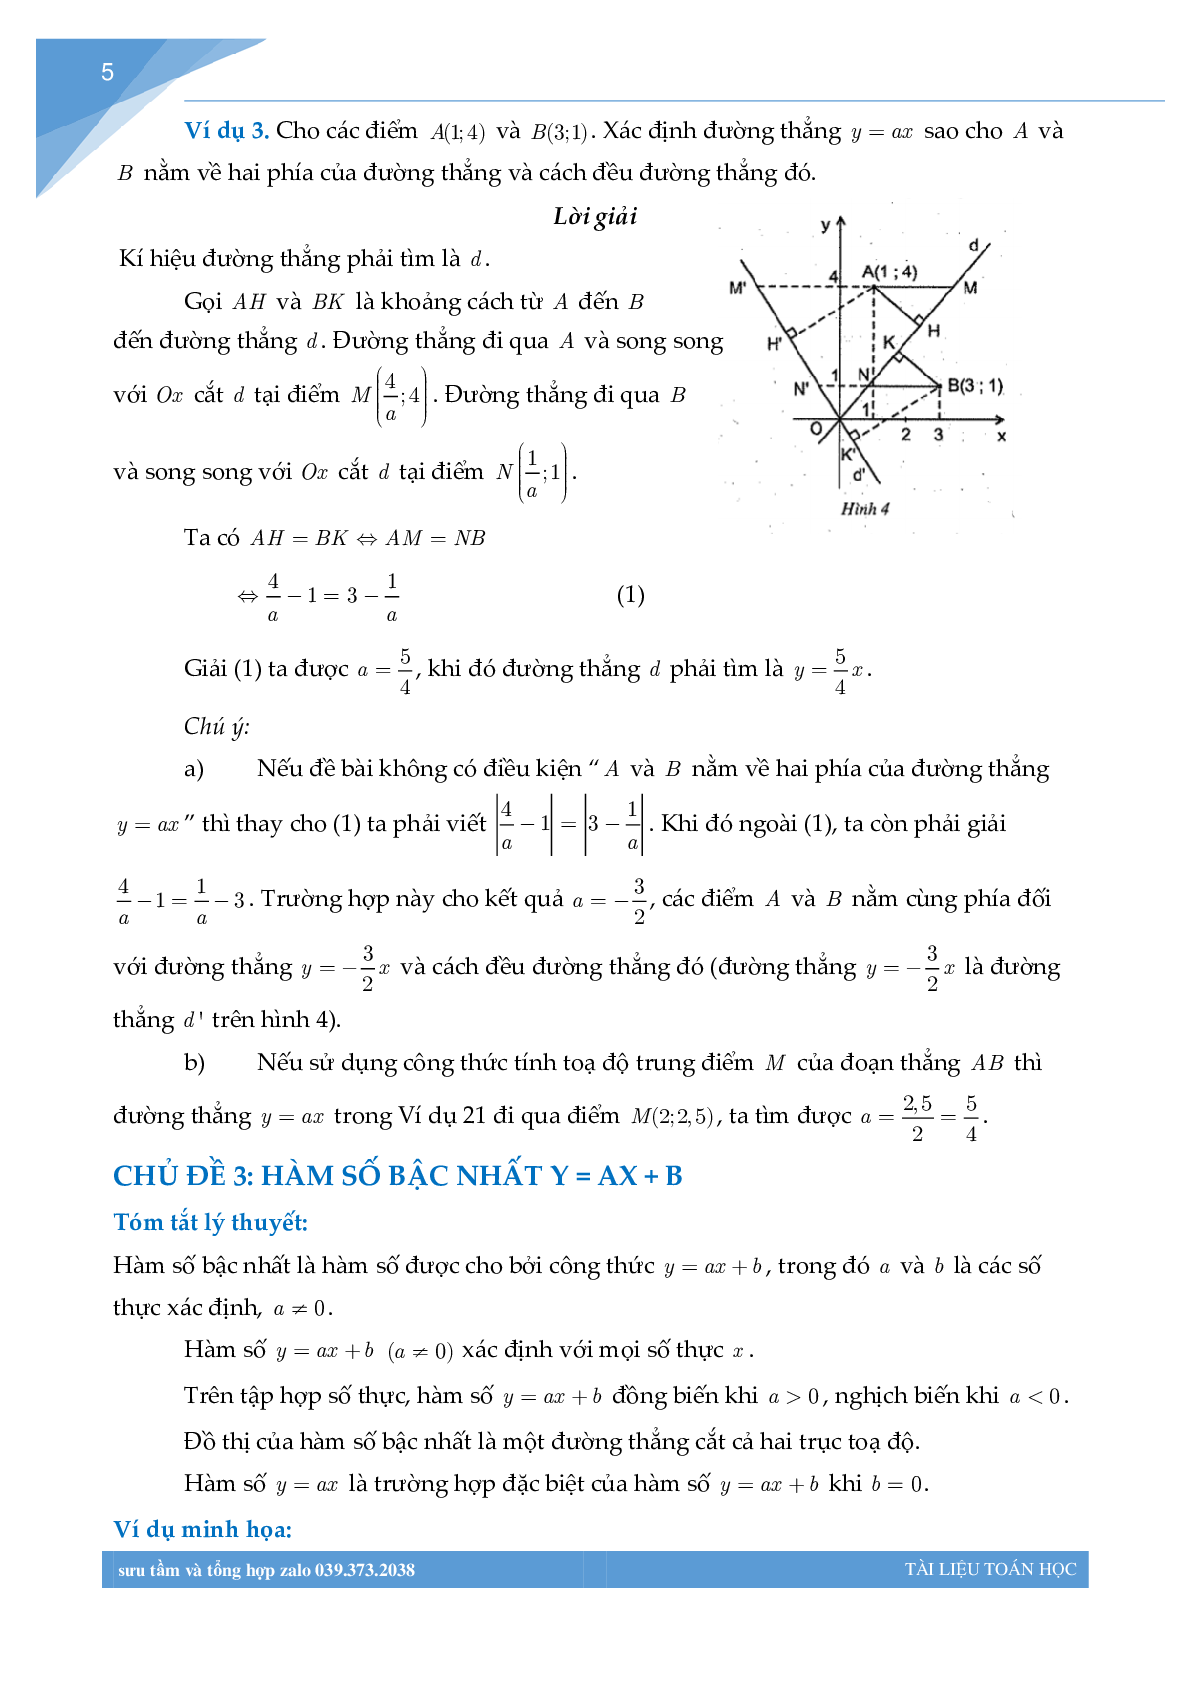 Chuyên đề hàm số bồi dưỡng học sinh giỏi toán THCS (trang 4)